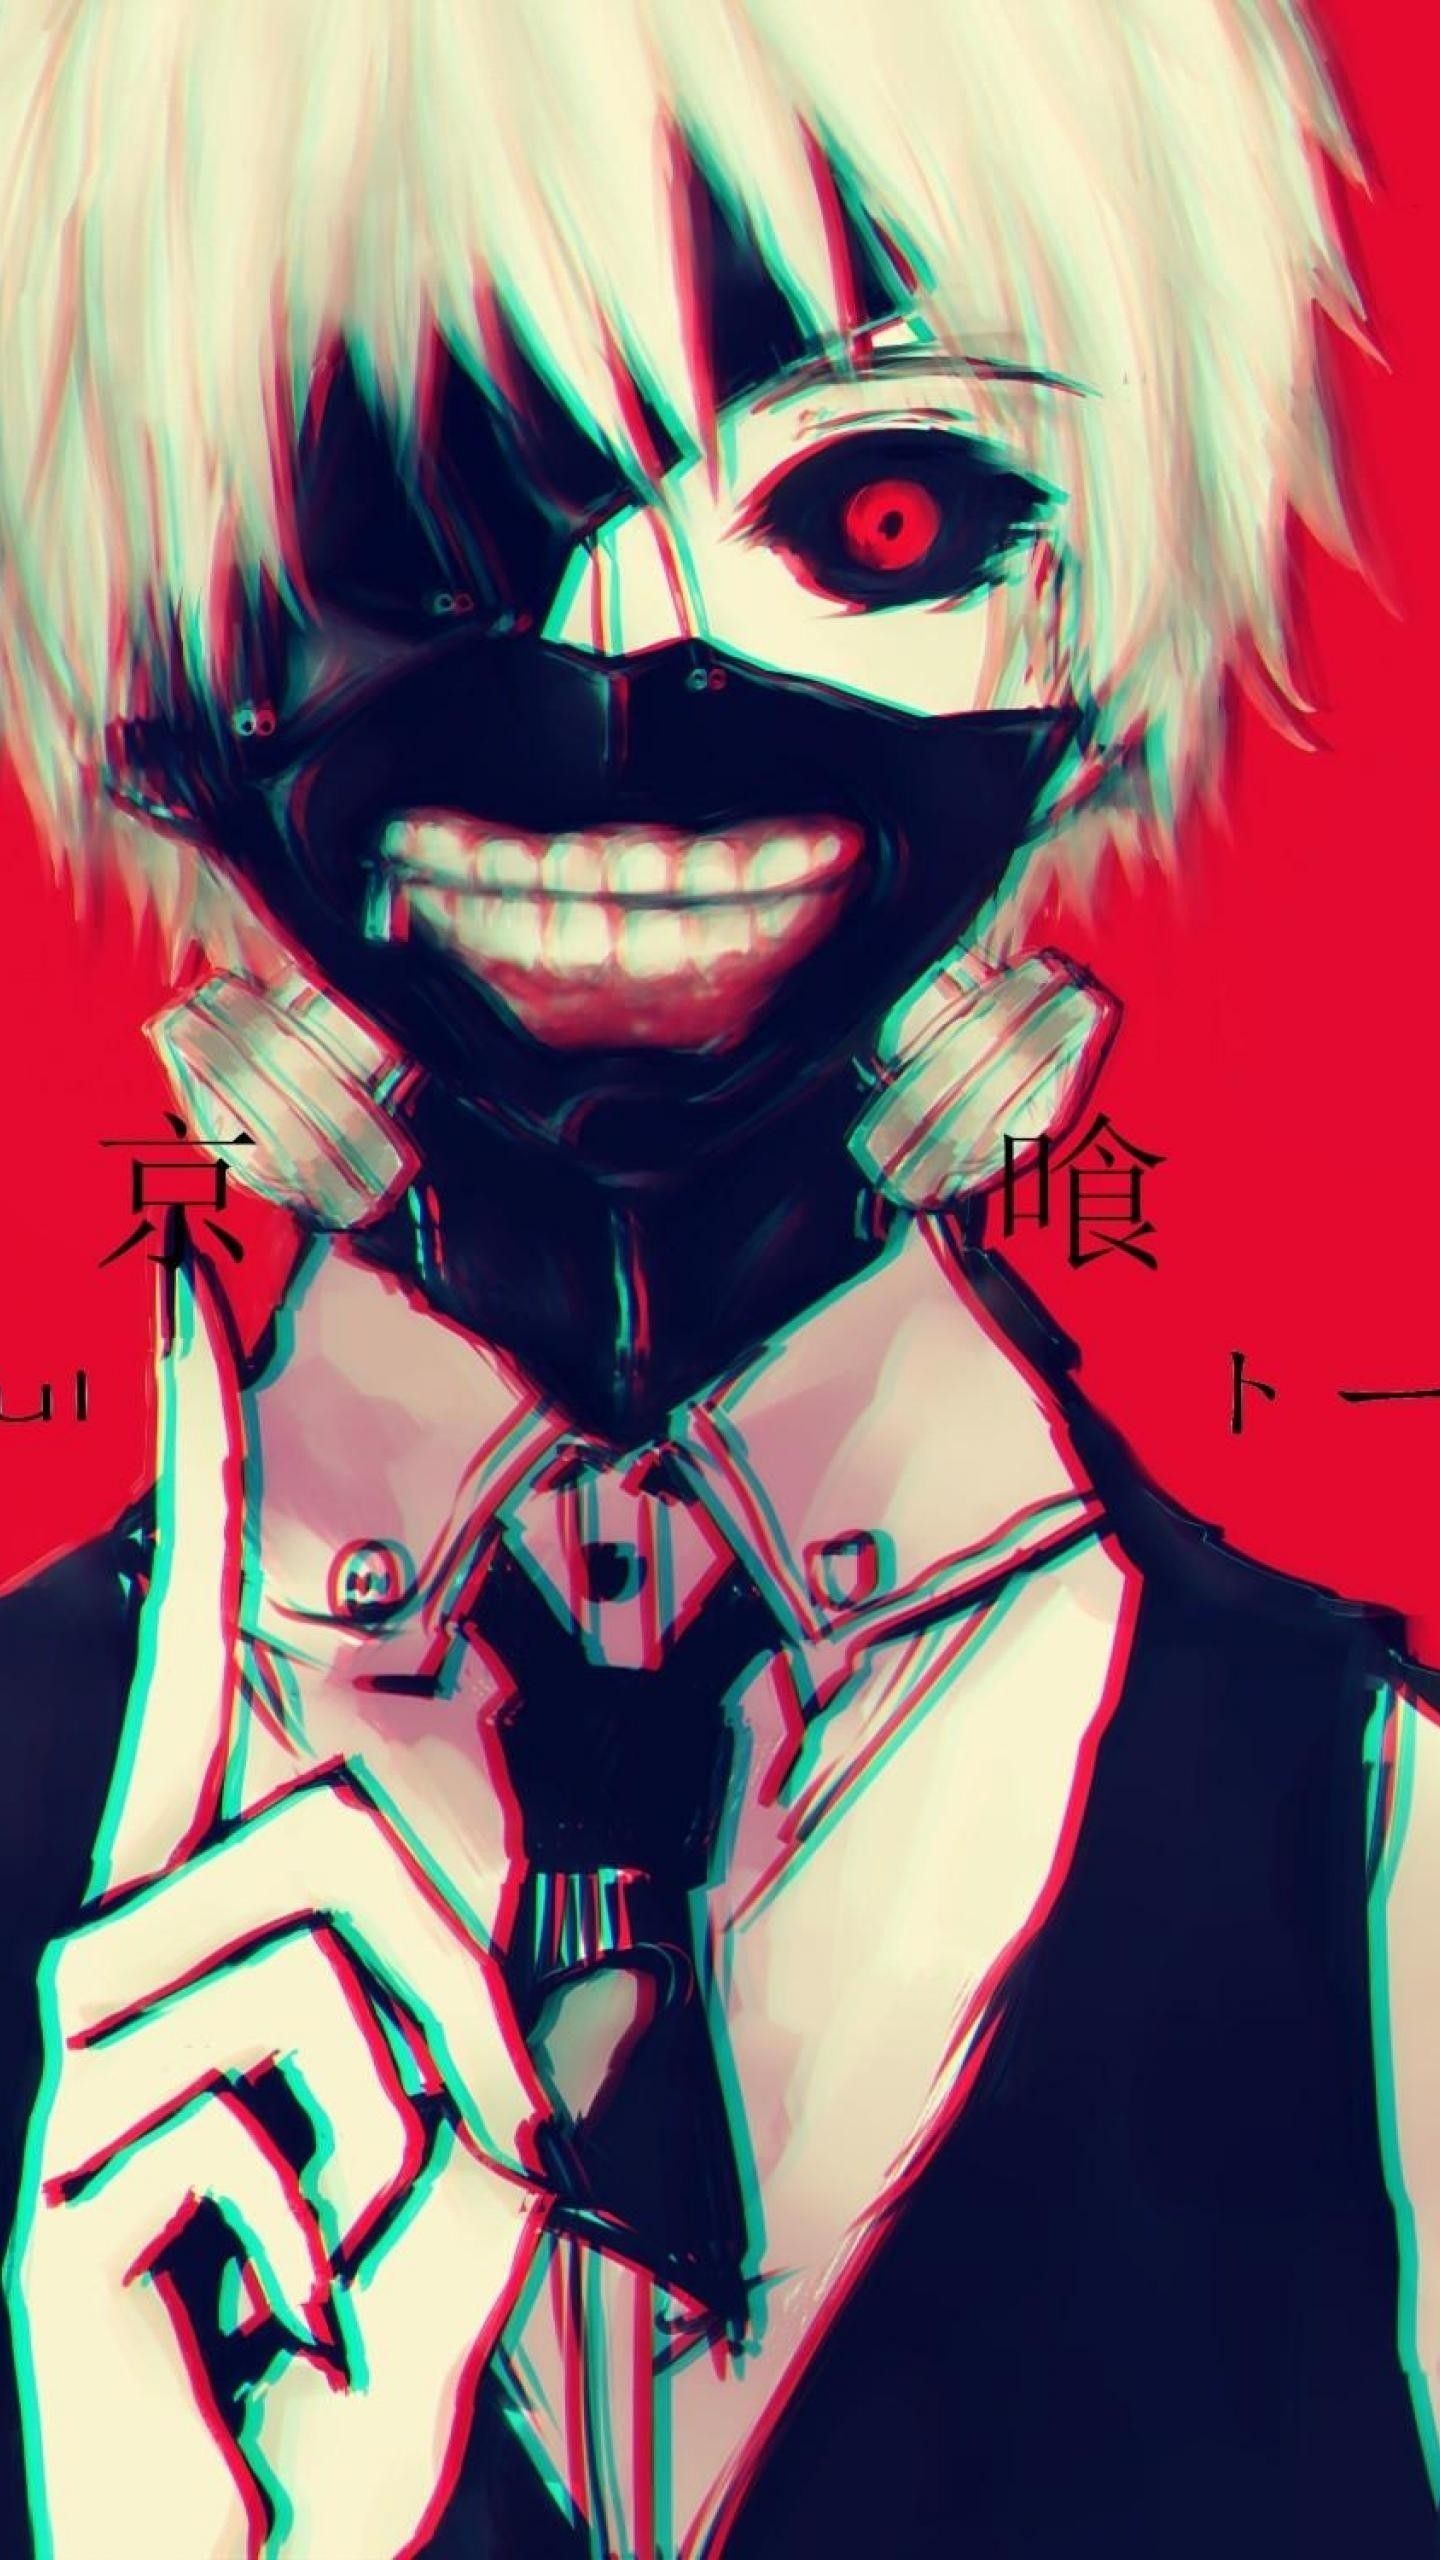 Wallpaper Anime. Cobain Wallpaper. Tokyo ghoul